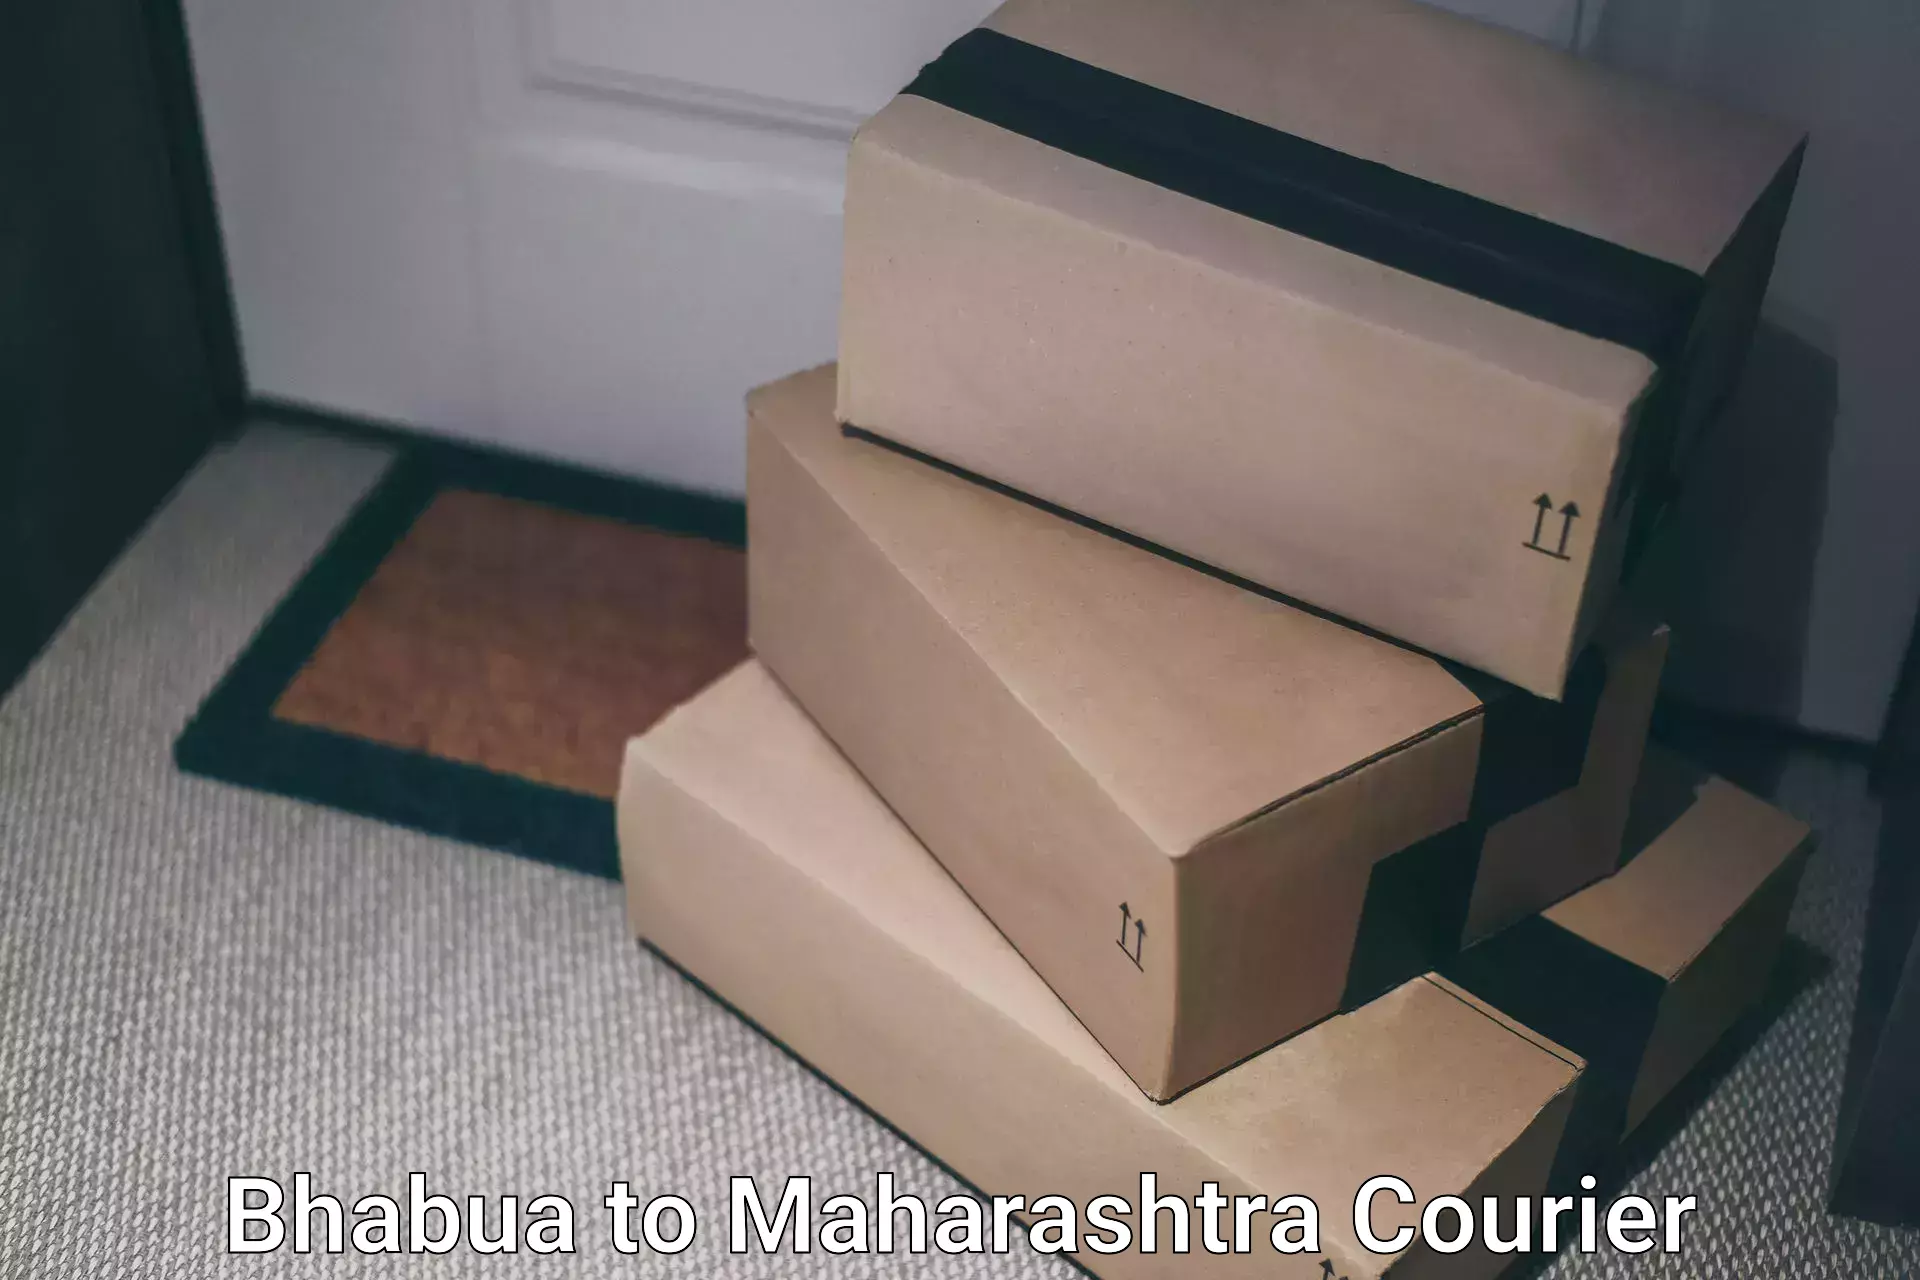 High-capacity shipping options in Bhabua to Tirora